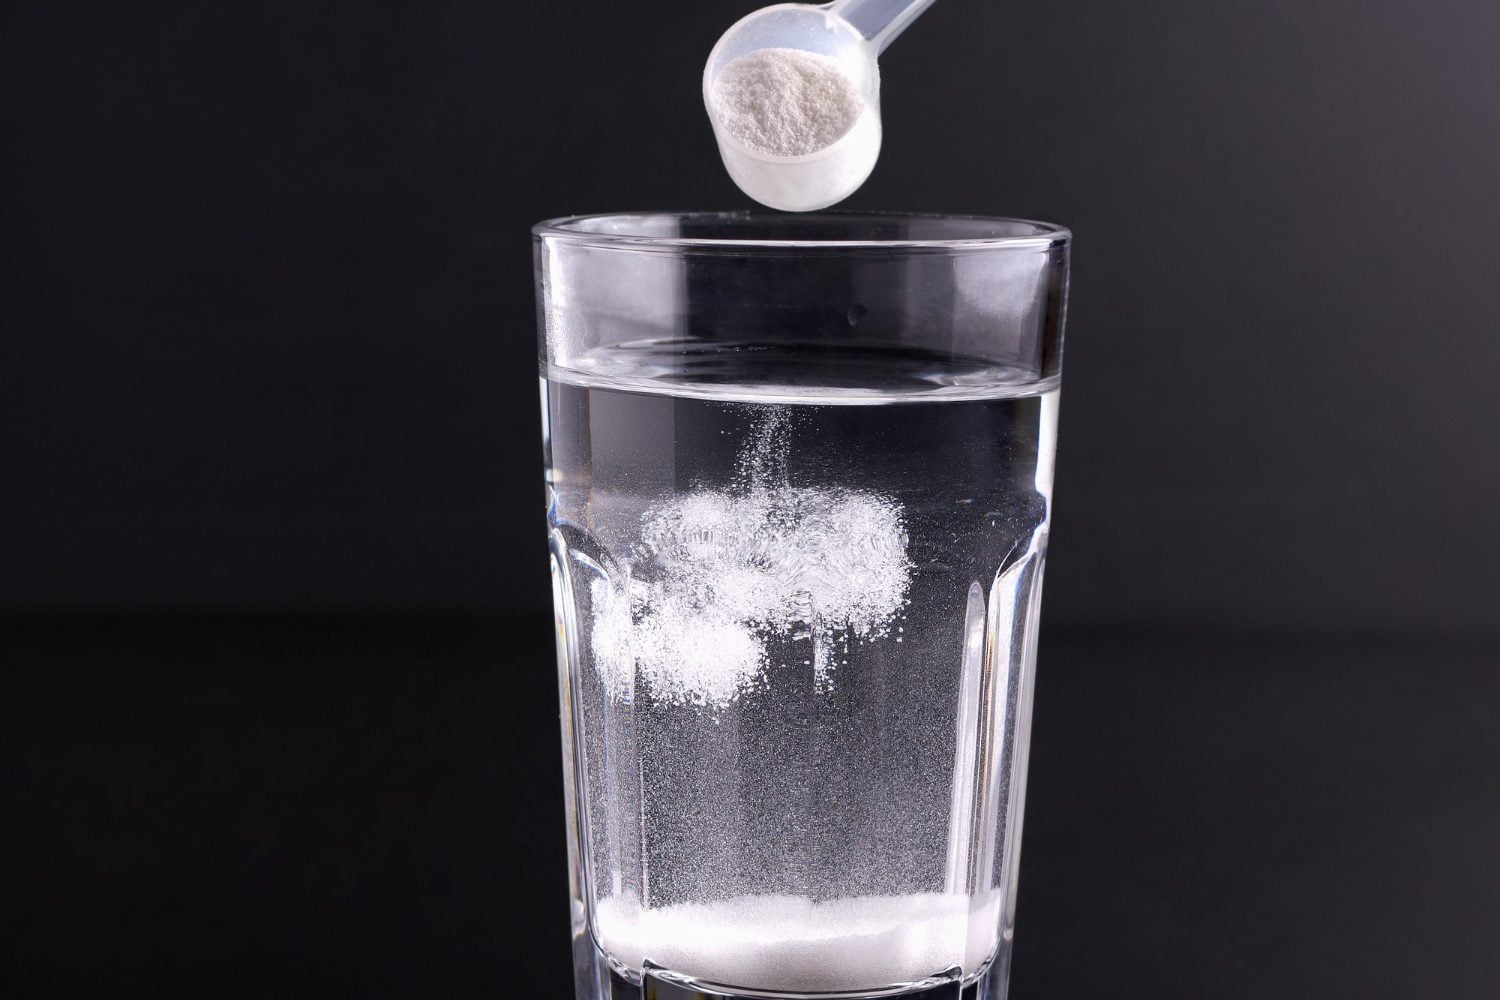 agua con bicarbonato / bicarbonato de sodio con agua